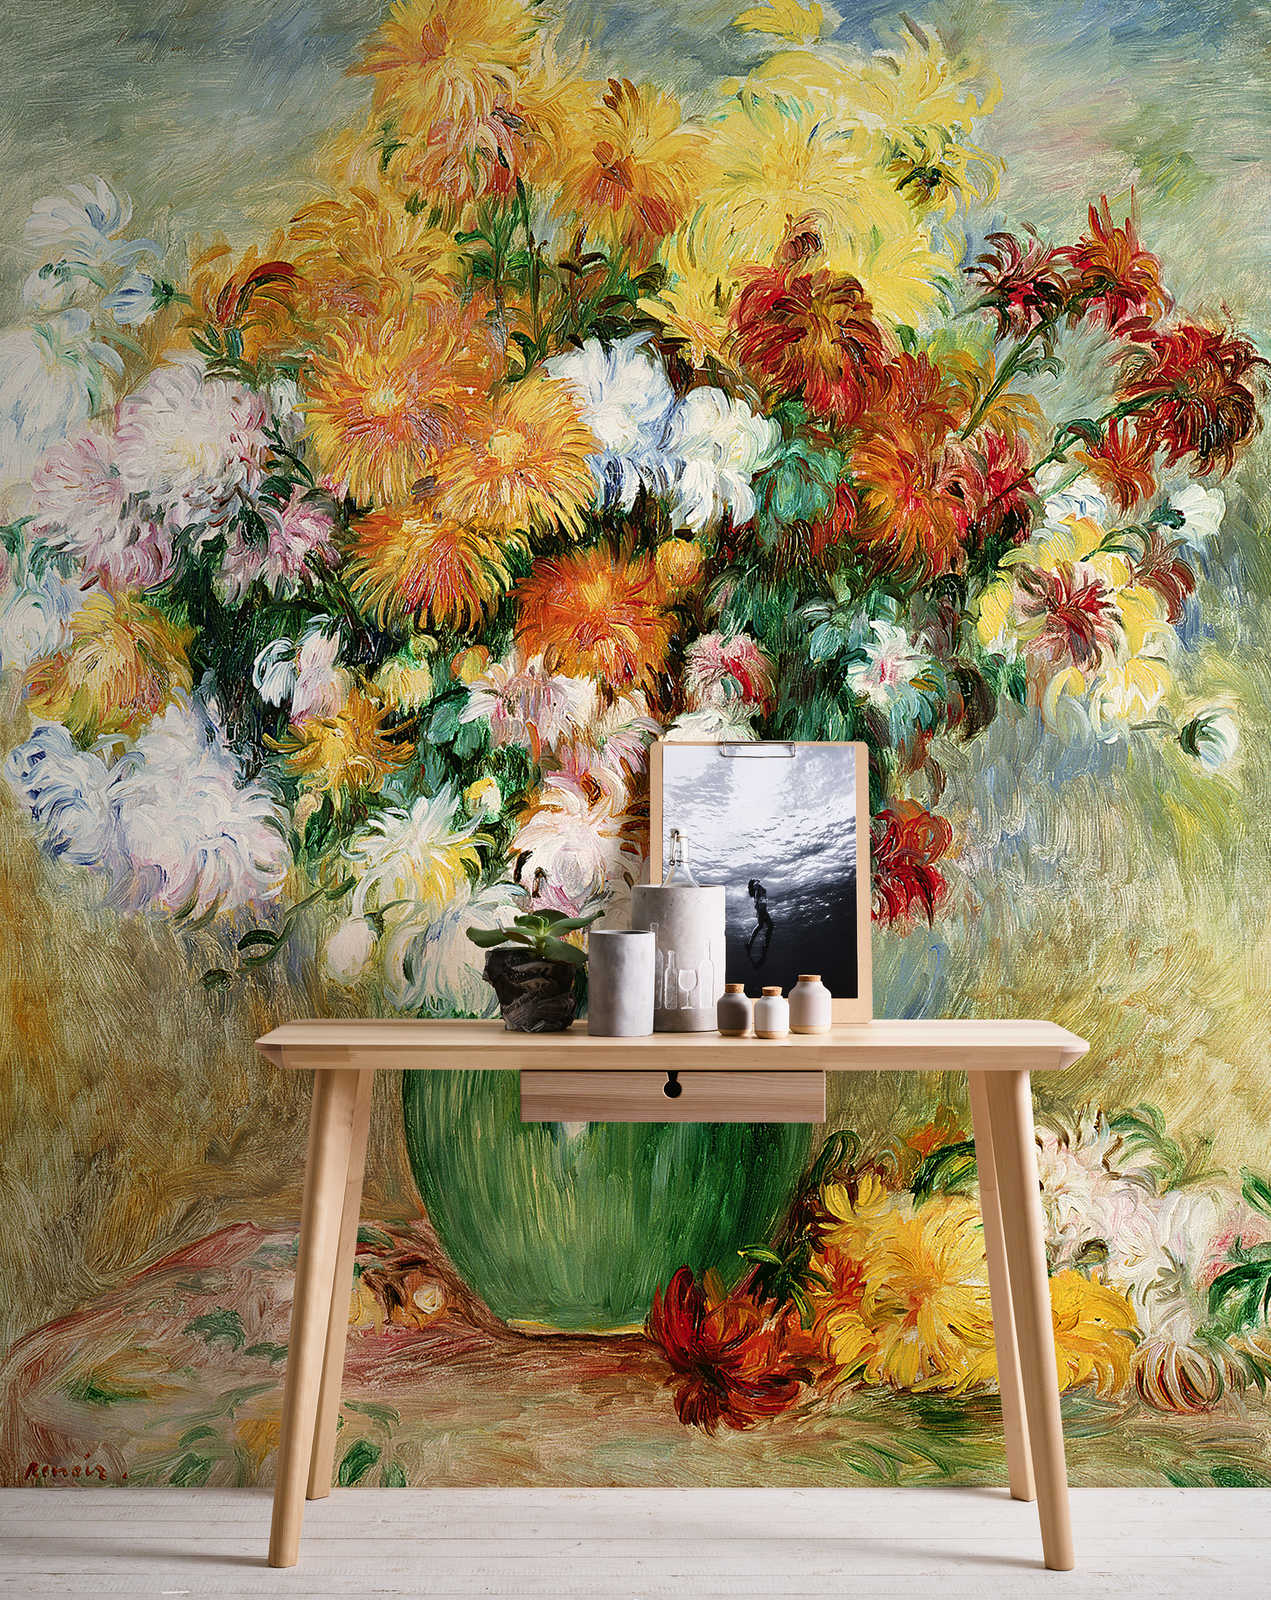             Bouquet di fiori con crisantemo" murale di Pierre Auguste Renoir
        